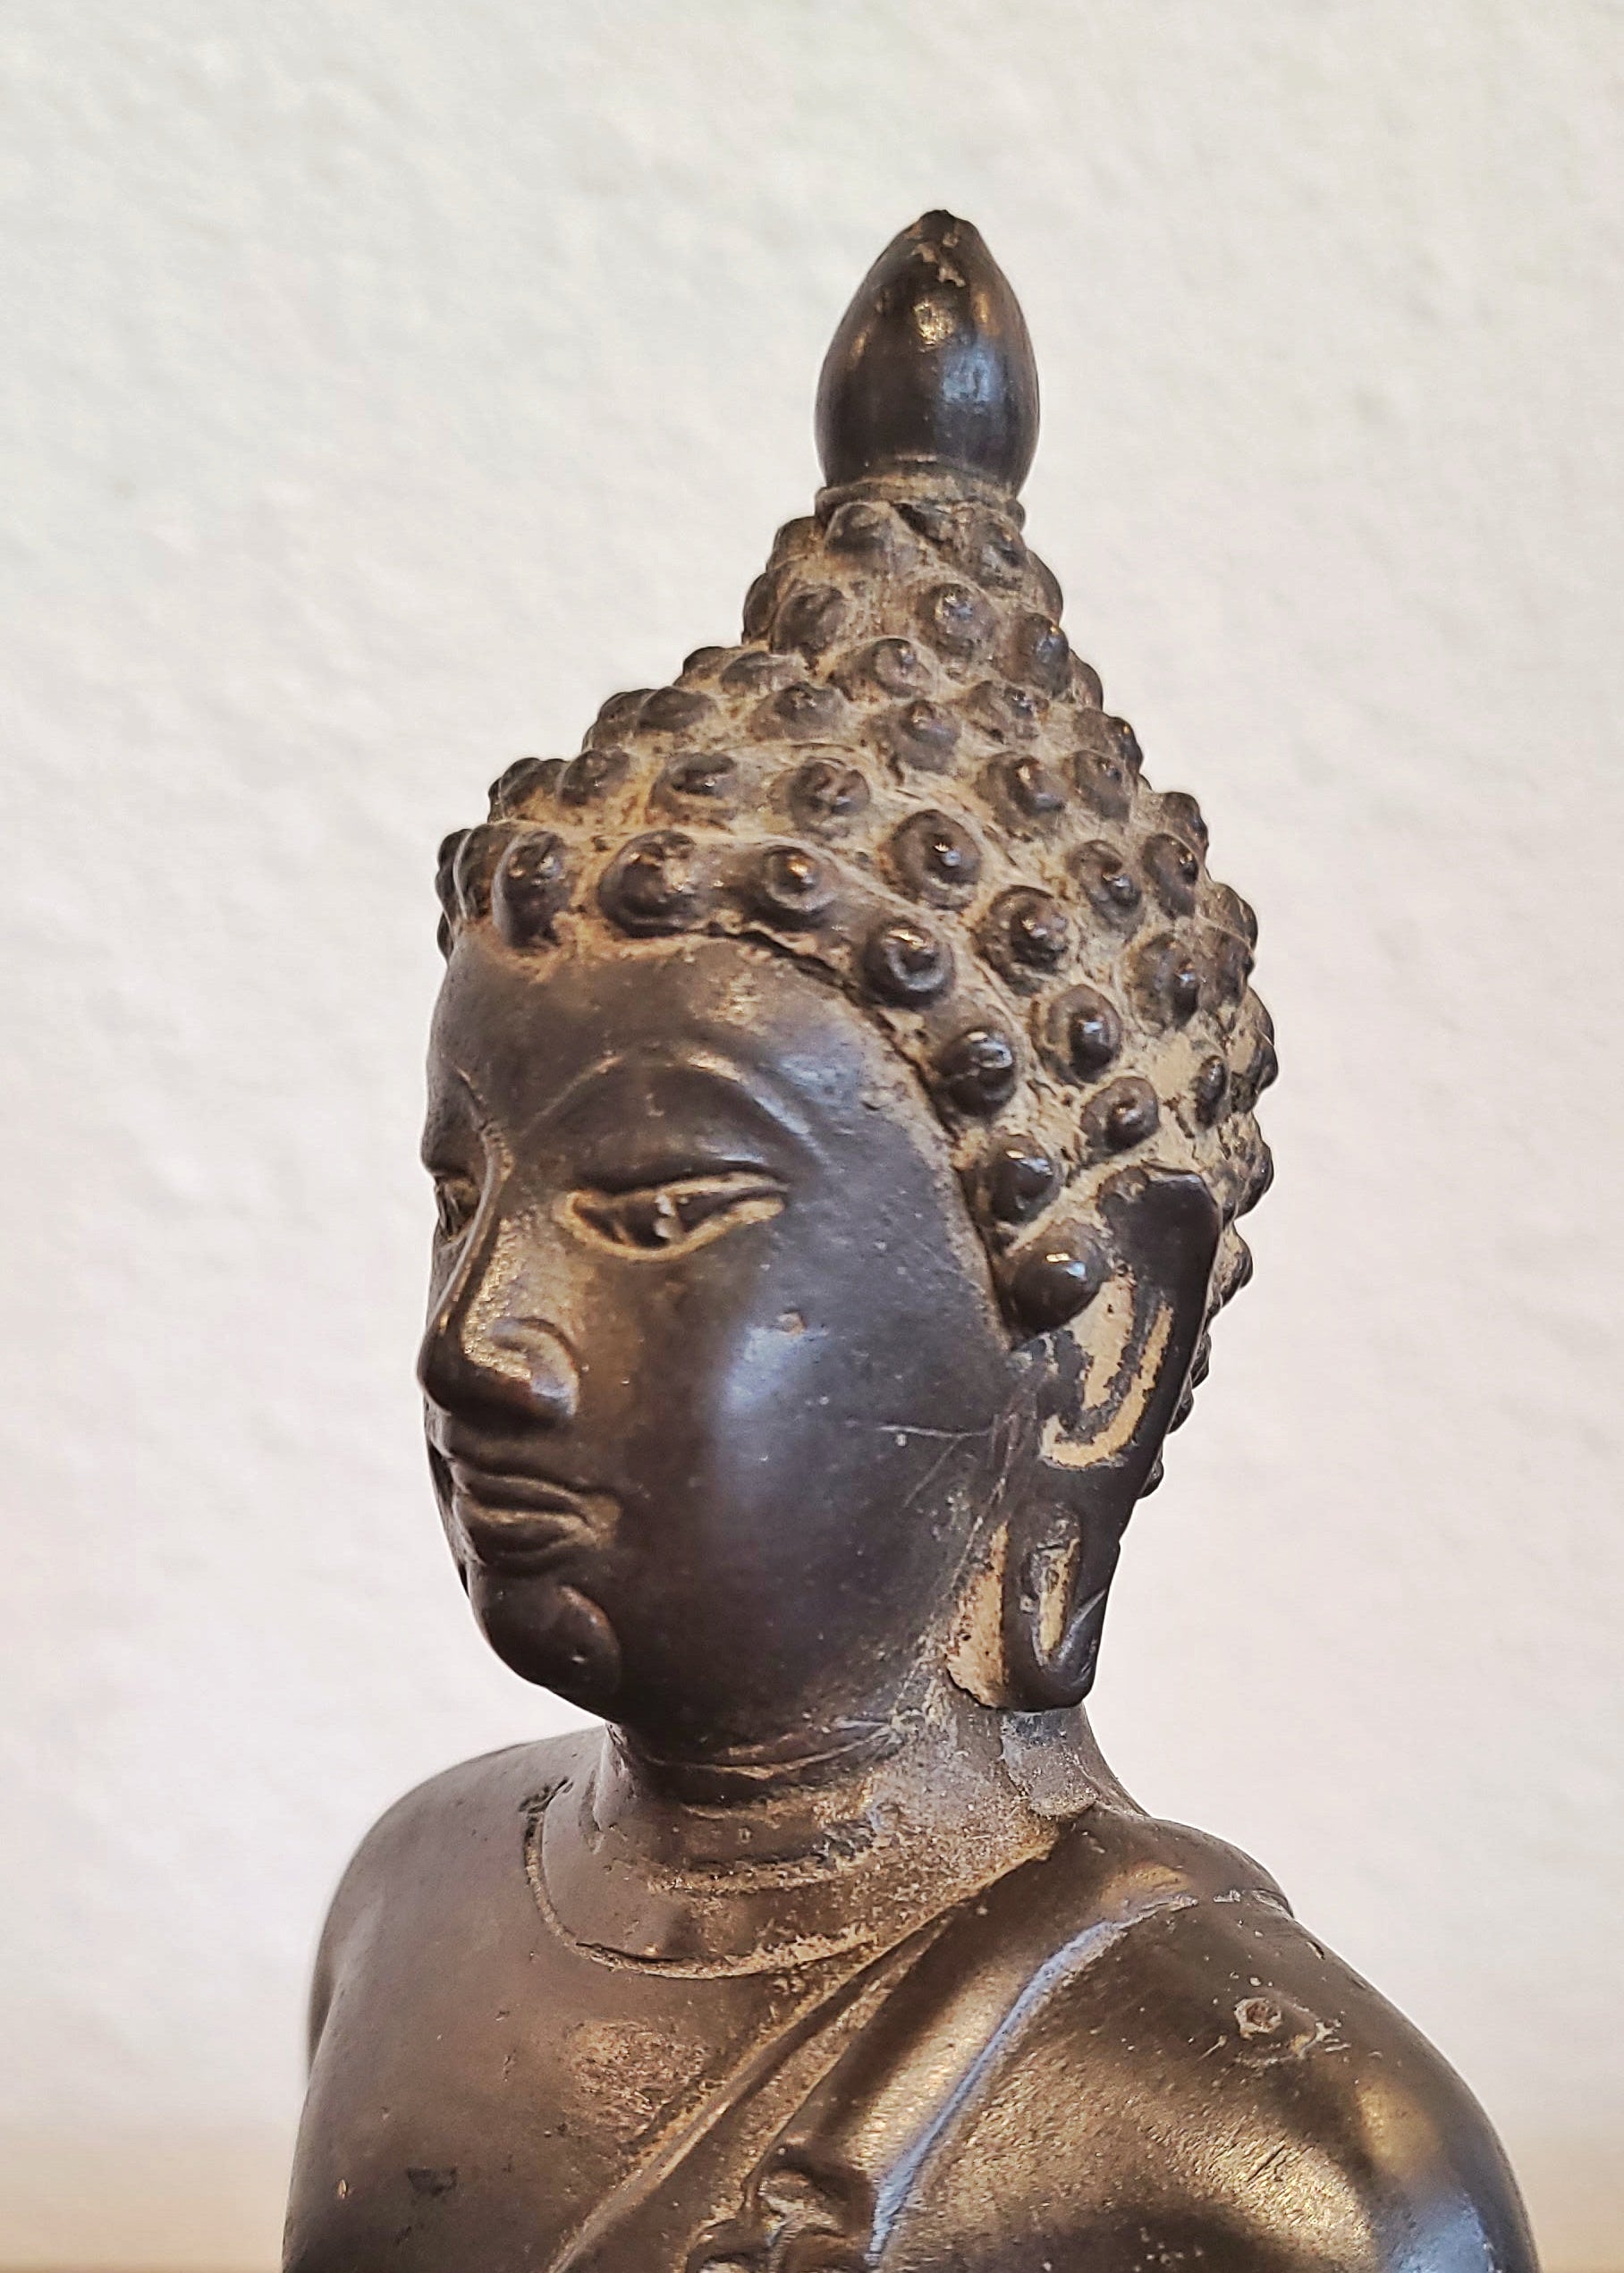 ANTIQUE CAST BRONZE SHAKYAMUNI BUDDHA DISPLAYING THE BHUMISPARSHA MUDRA